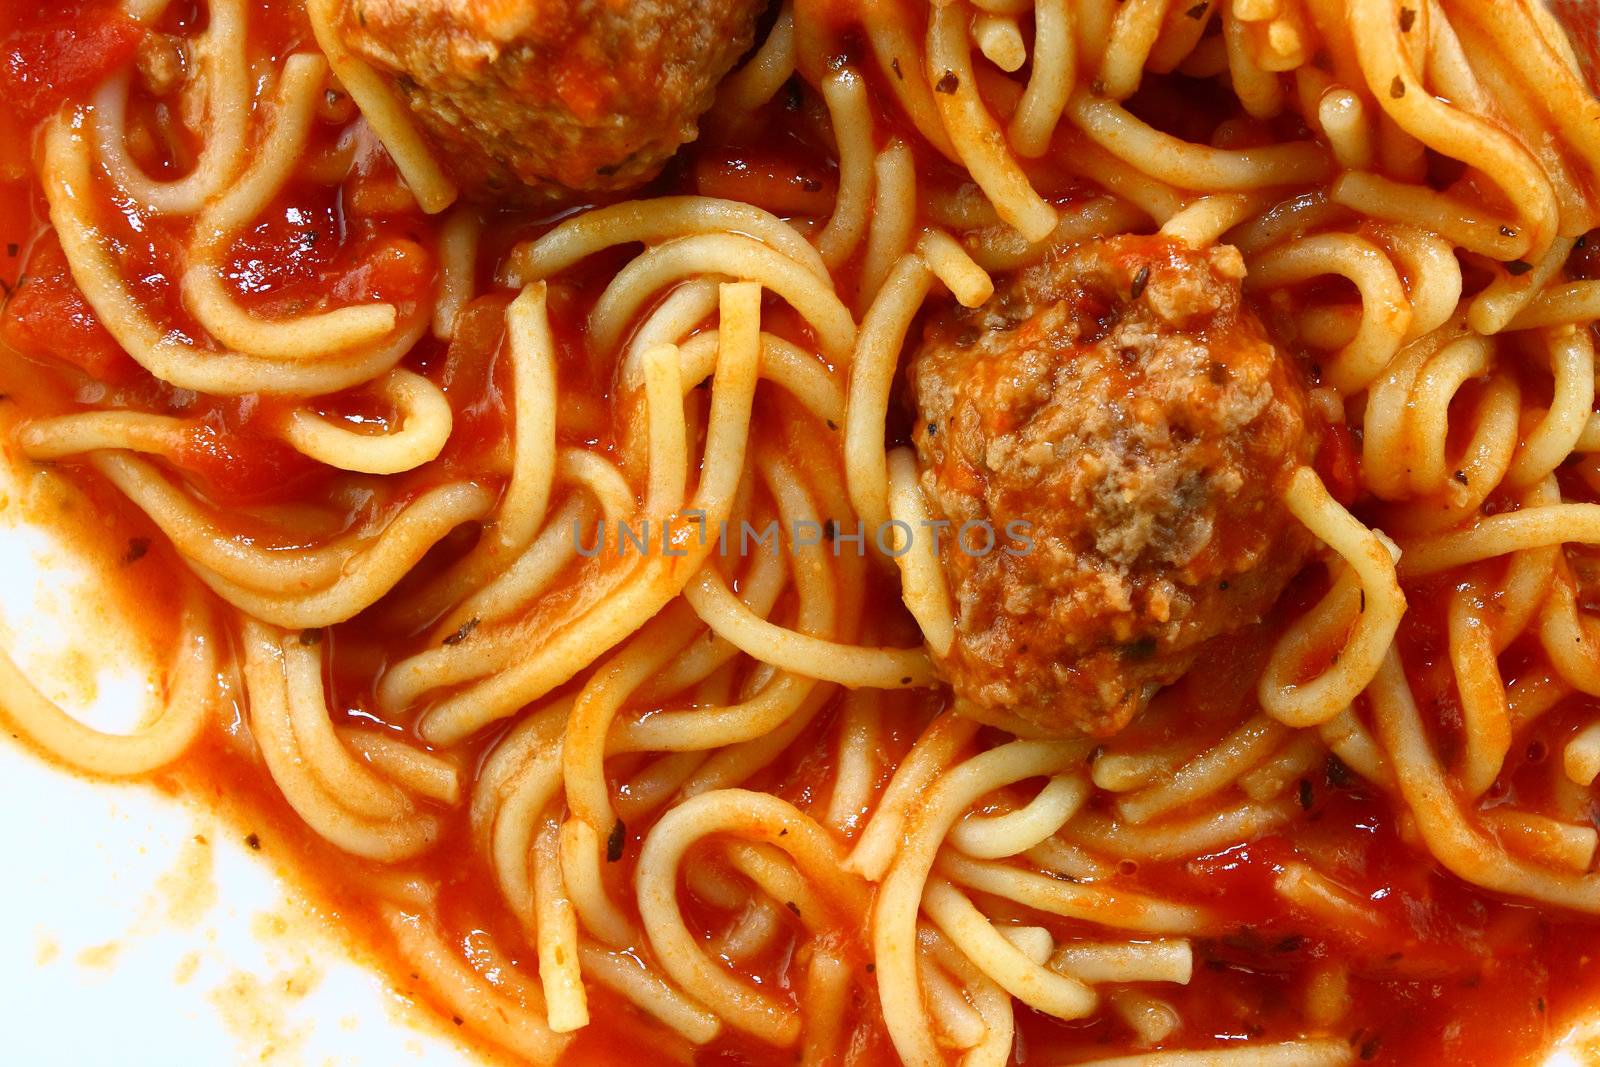 Spaghetti macro by Geoarts